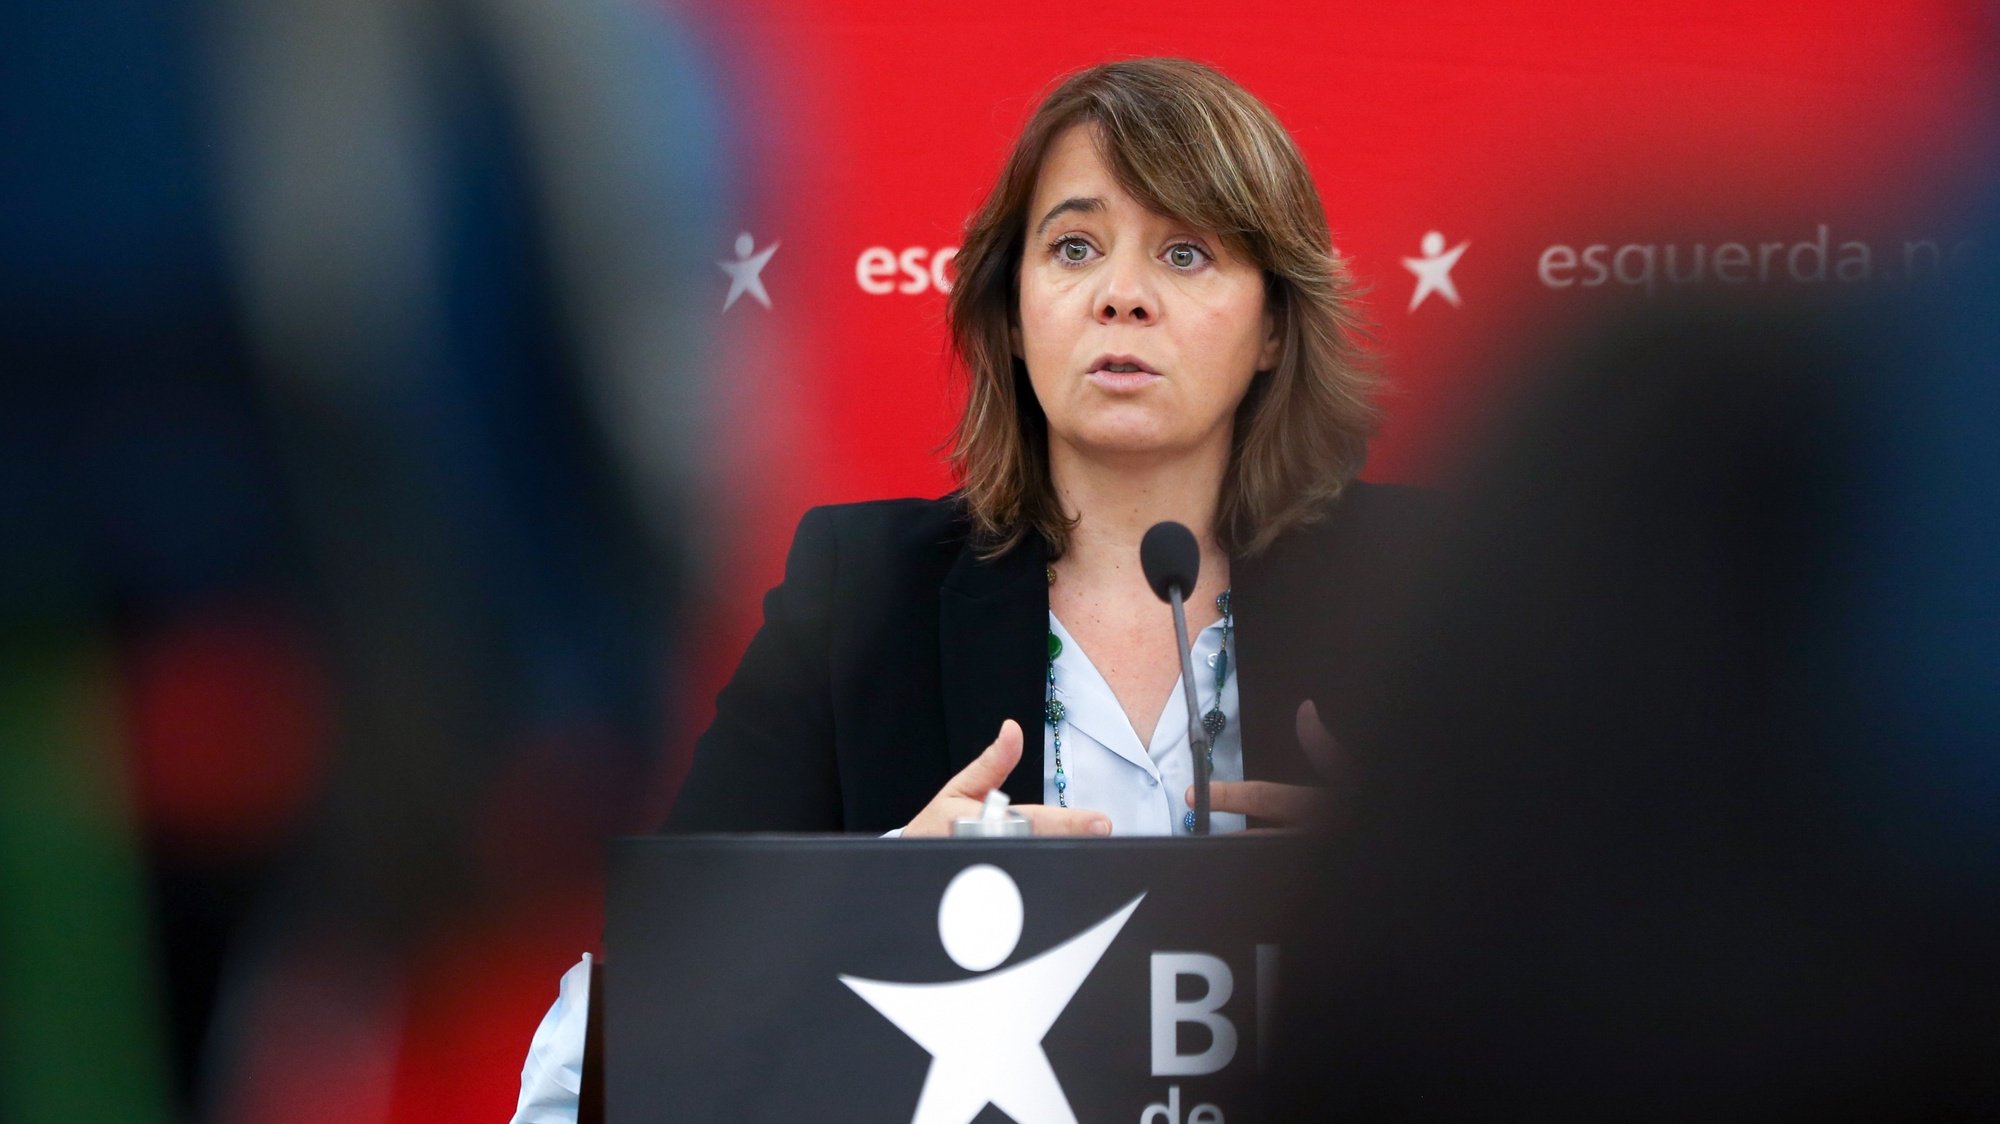 A coordenadora do Bloco de Esquerda (BE), Catarina Martins, durante a conferência de imprensa sobre medidas a adotar no quadro do Estado de Emergência, na sede do partido em Lisboa, 12 de novembro de 2020. MANUEL DE ALMEIDA/ LUSA